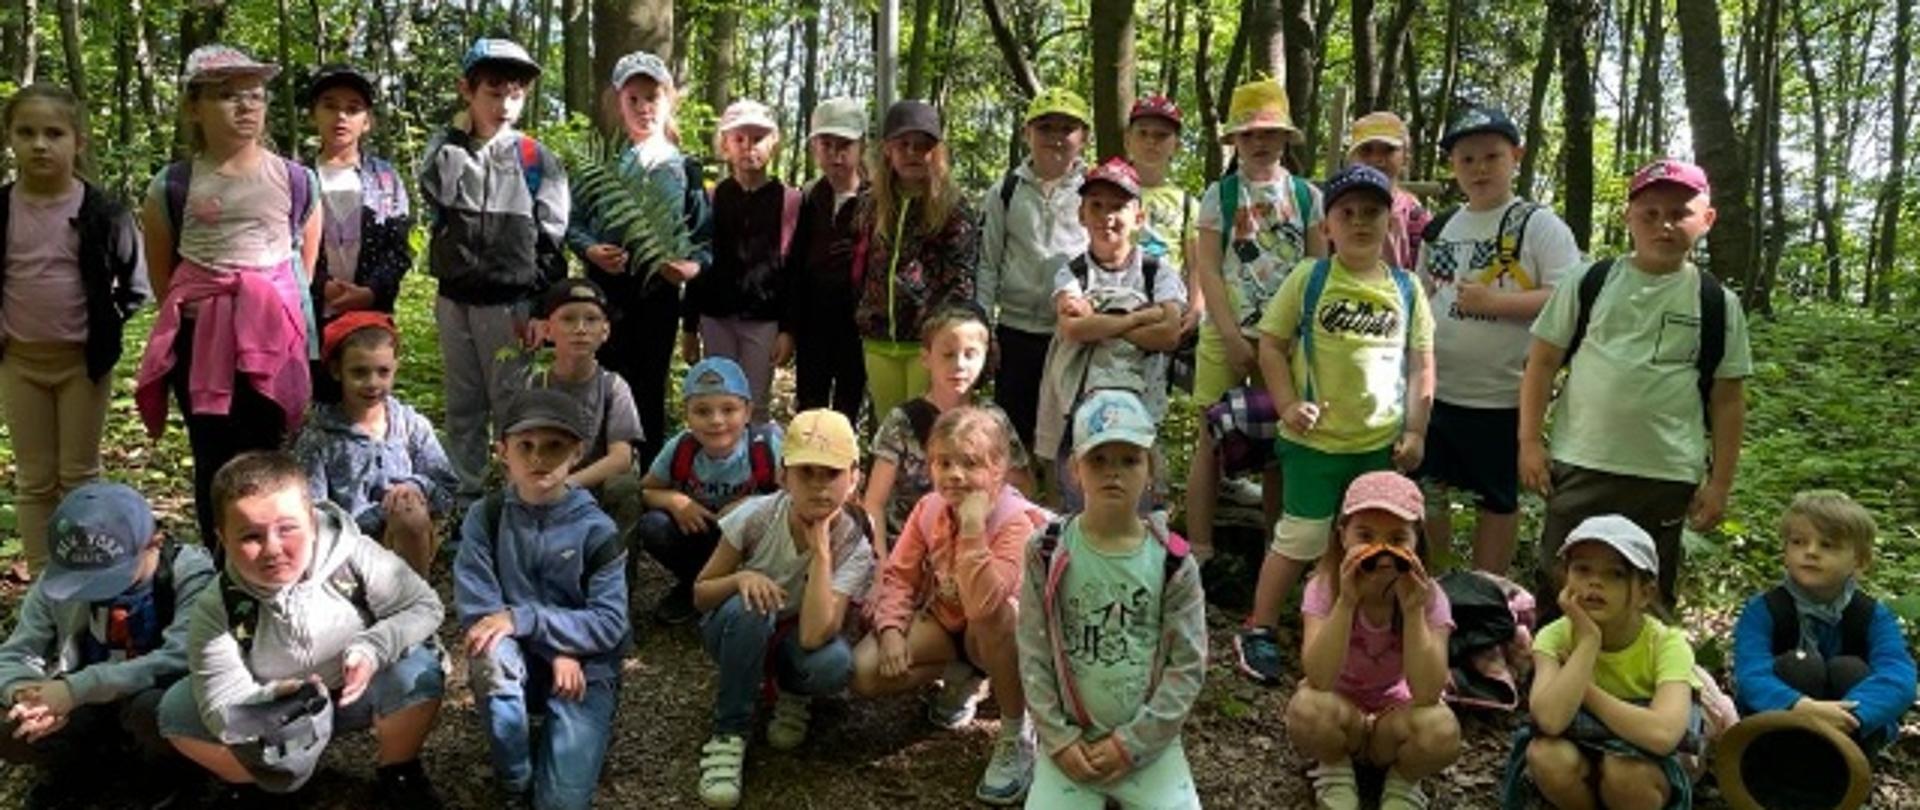 Na zdjęciu widać grupę dzieci w lesie.